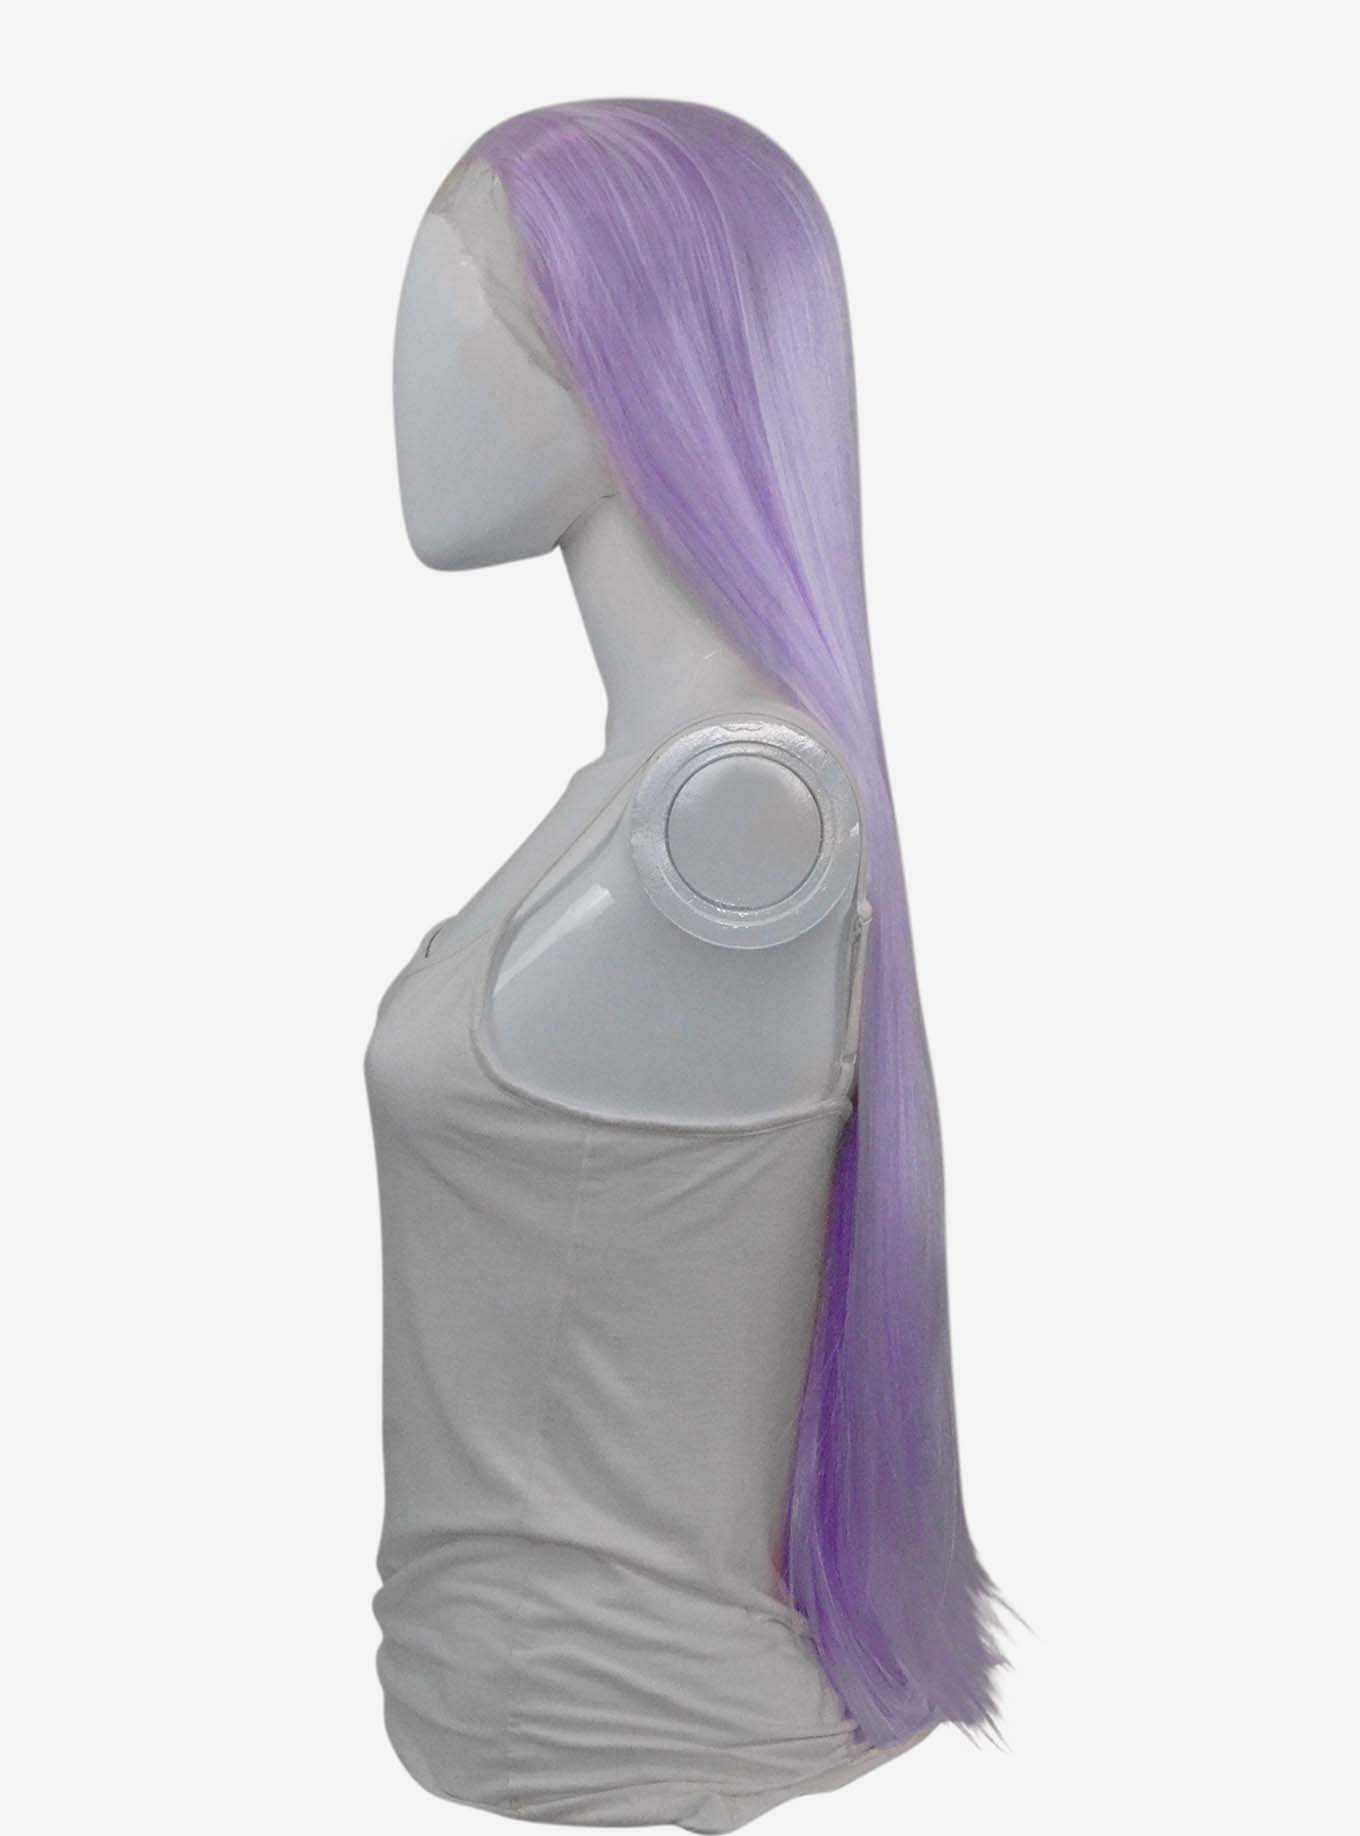 Epic Cosplay Lacefront Eros Fusion Vanilla Purple Wig, , hi-res